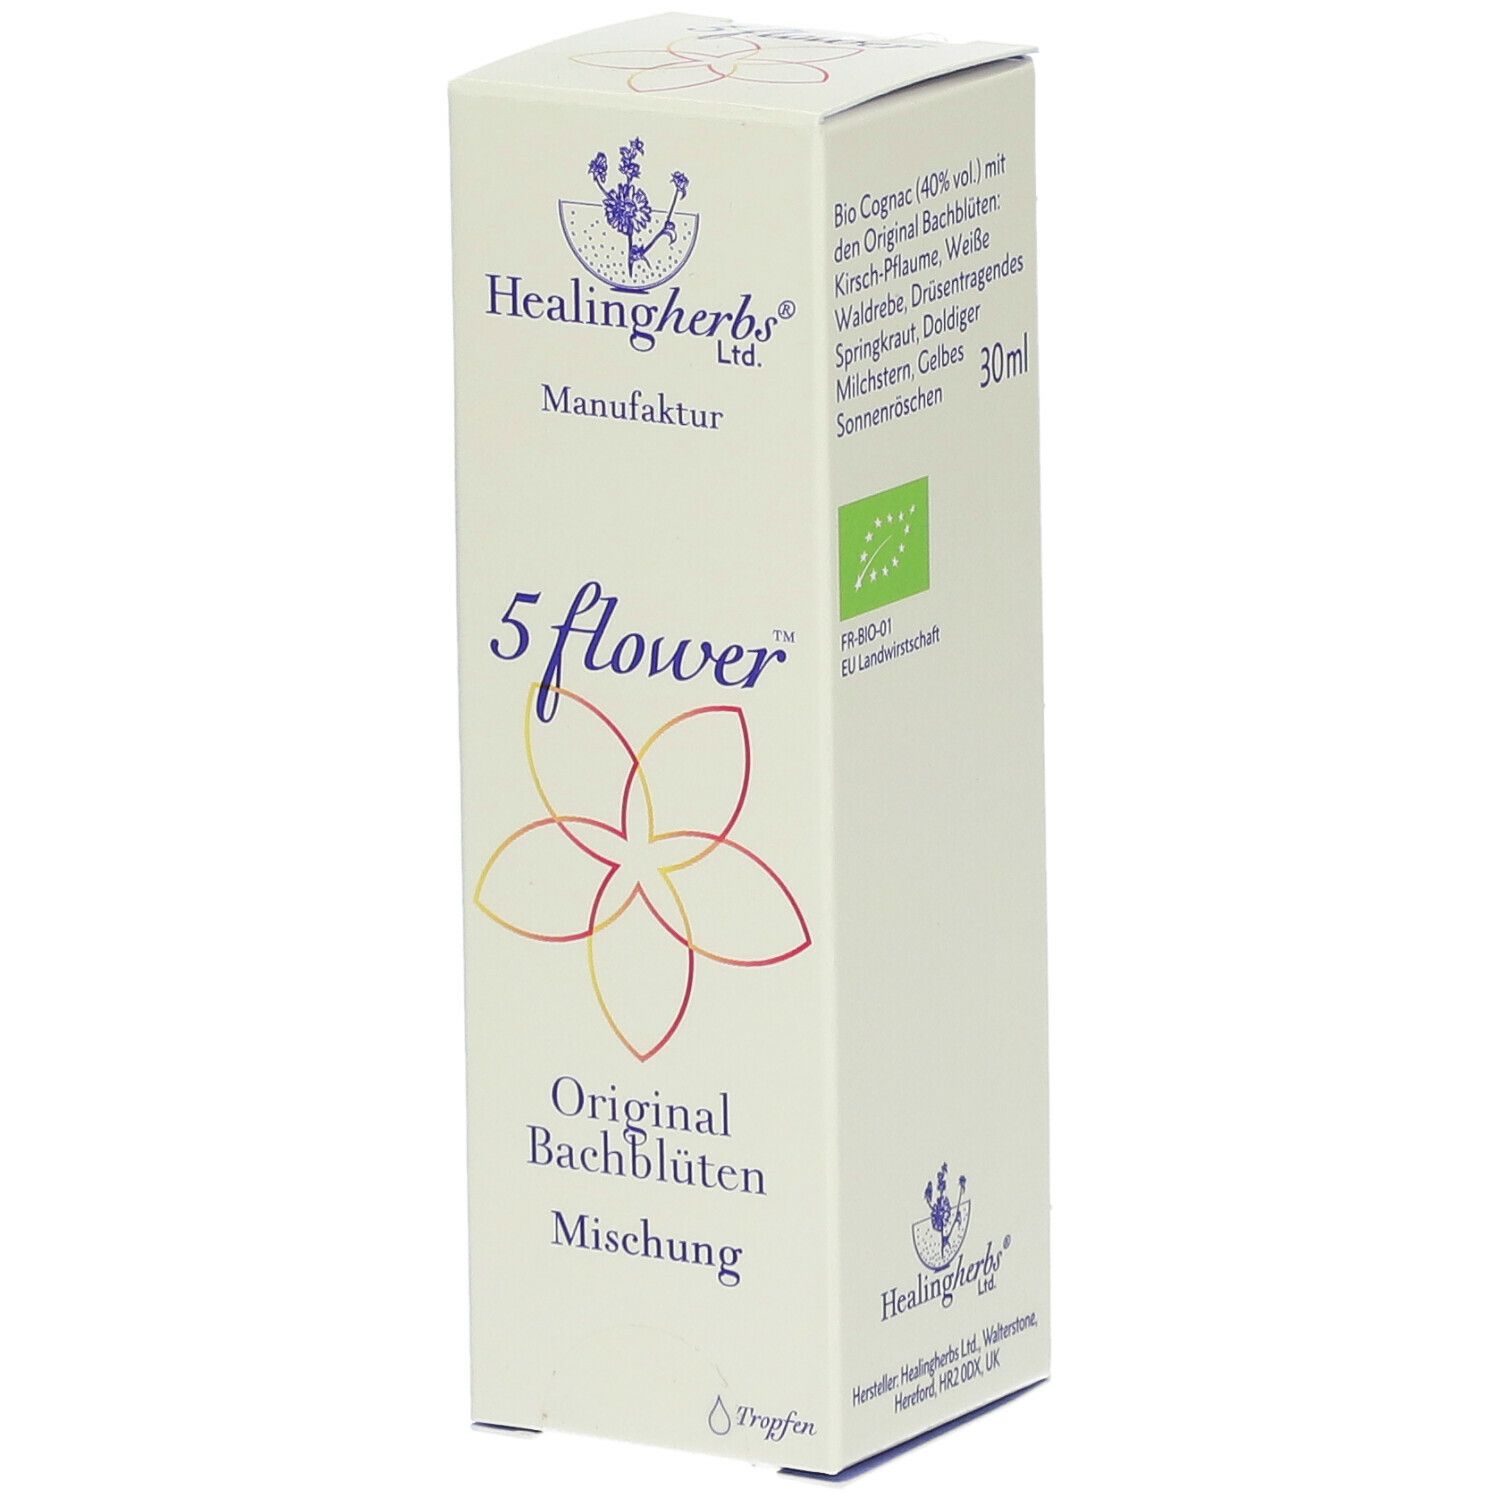 Healingherbs® Bachblüten 5-flower Mischung